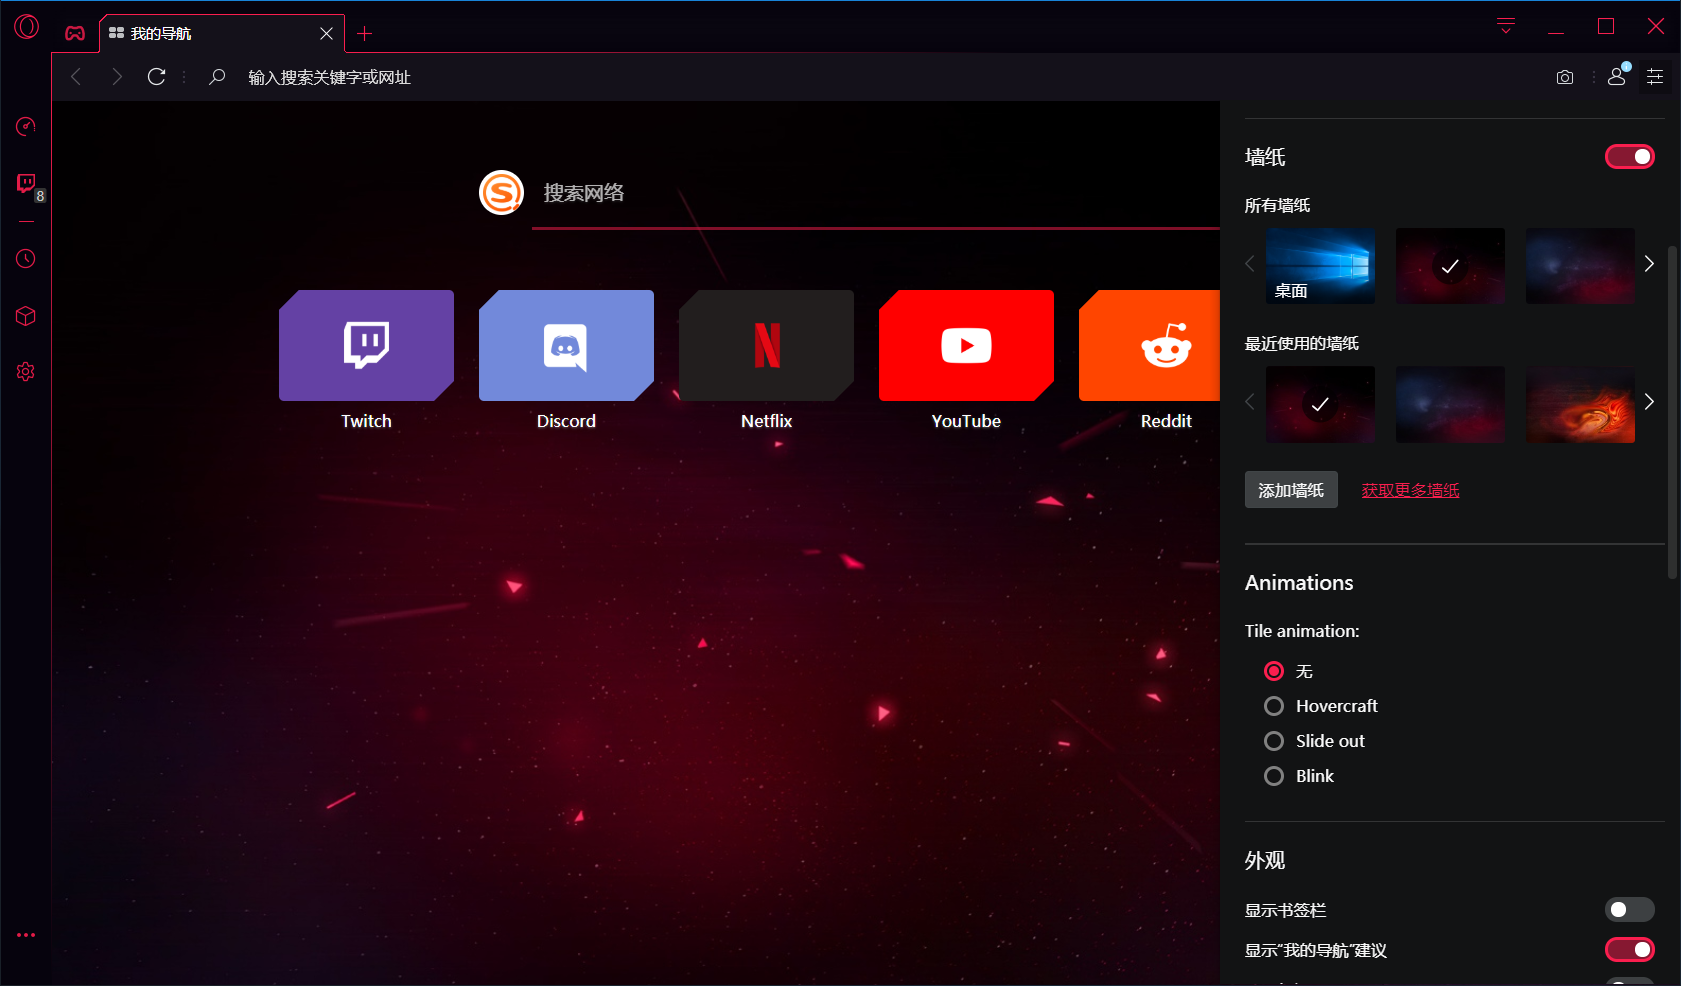 Opera 推出首款 游戏浏览器 设计酷炫 还能和灯厂设备联动 玩家